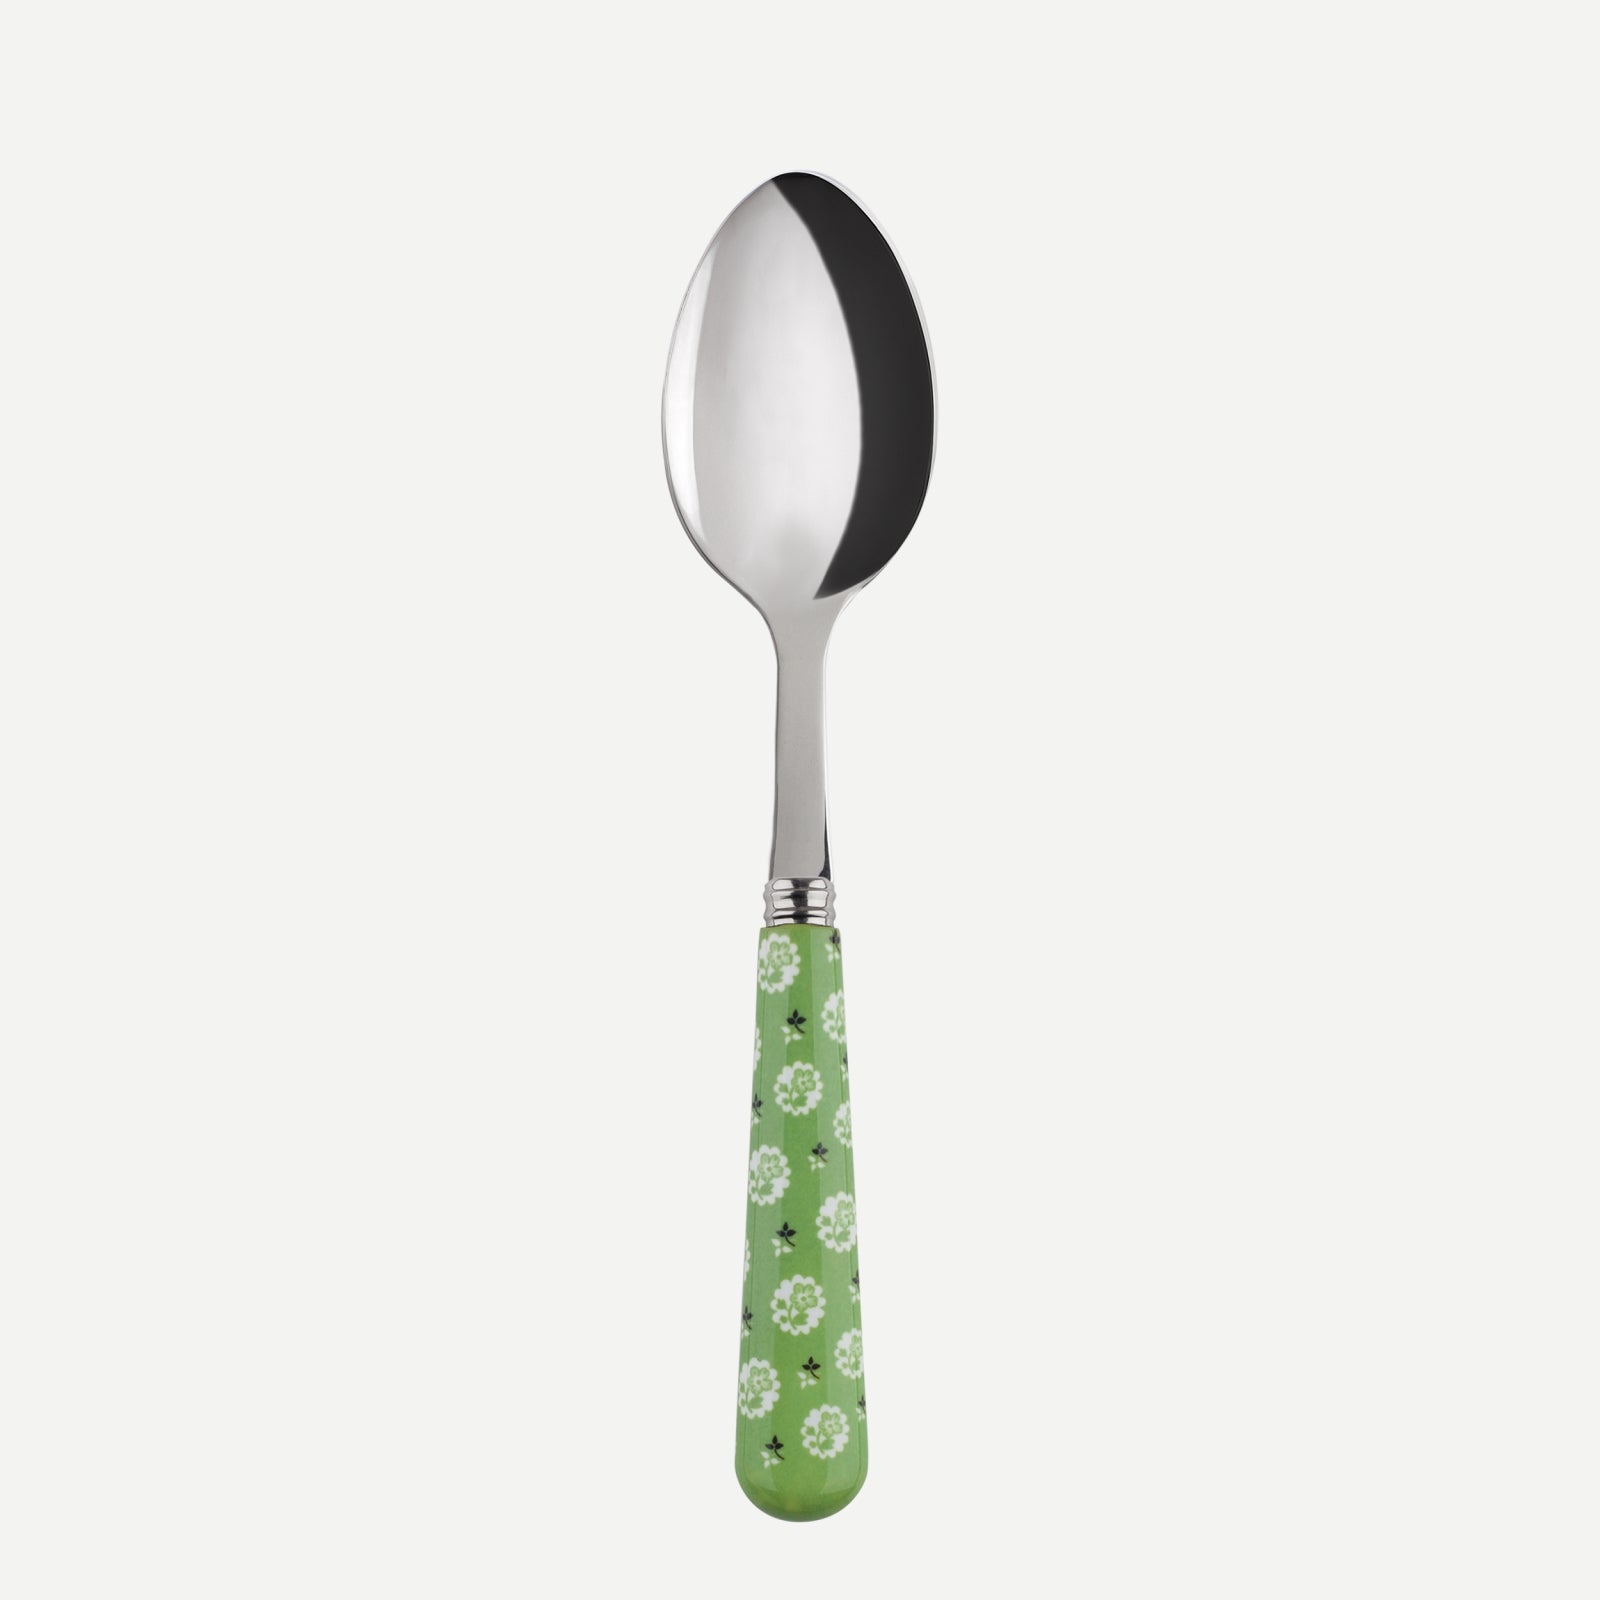 Cake spoon - Provencal - Garden green